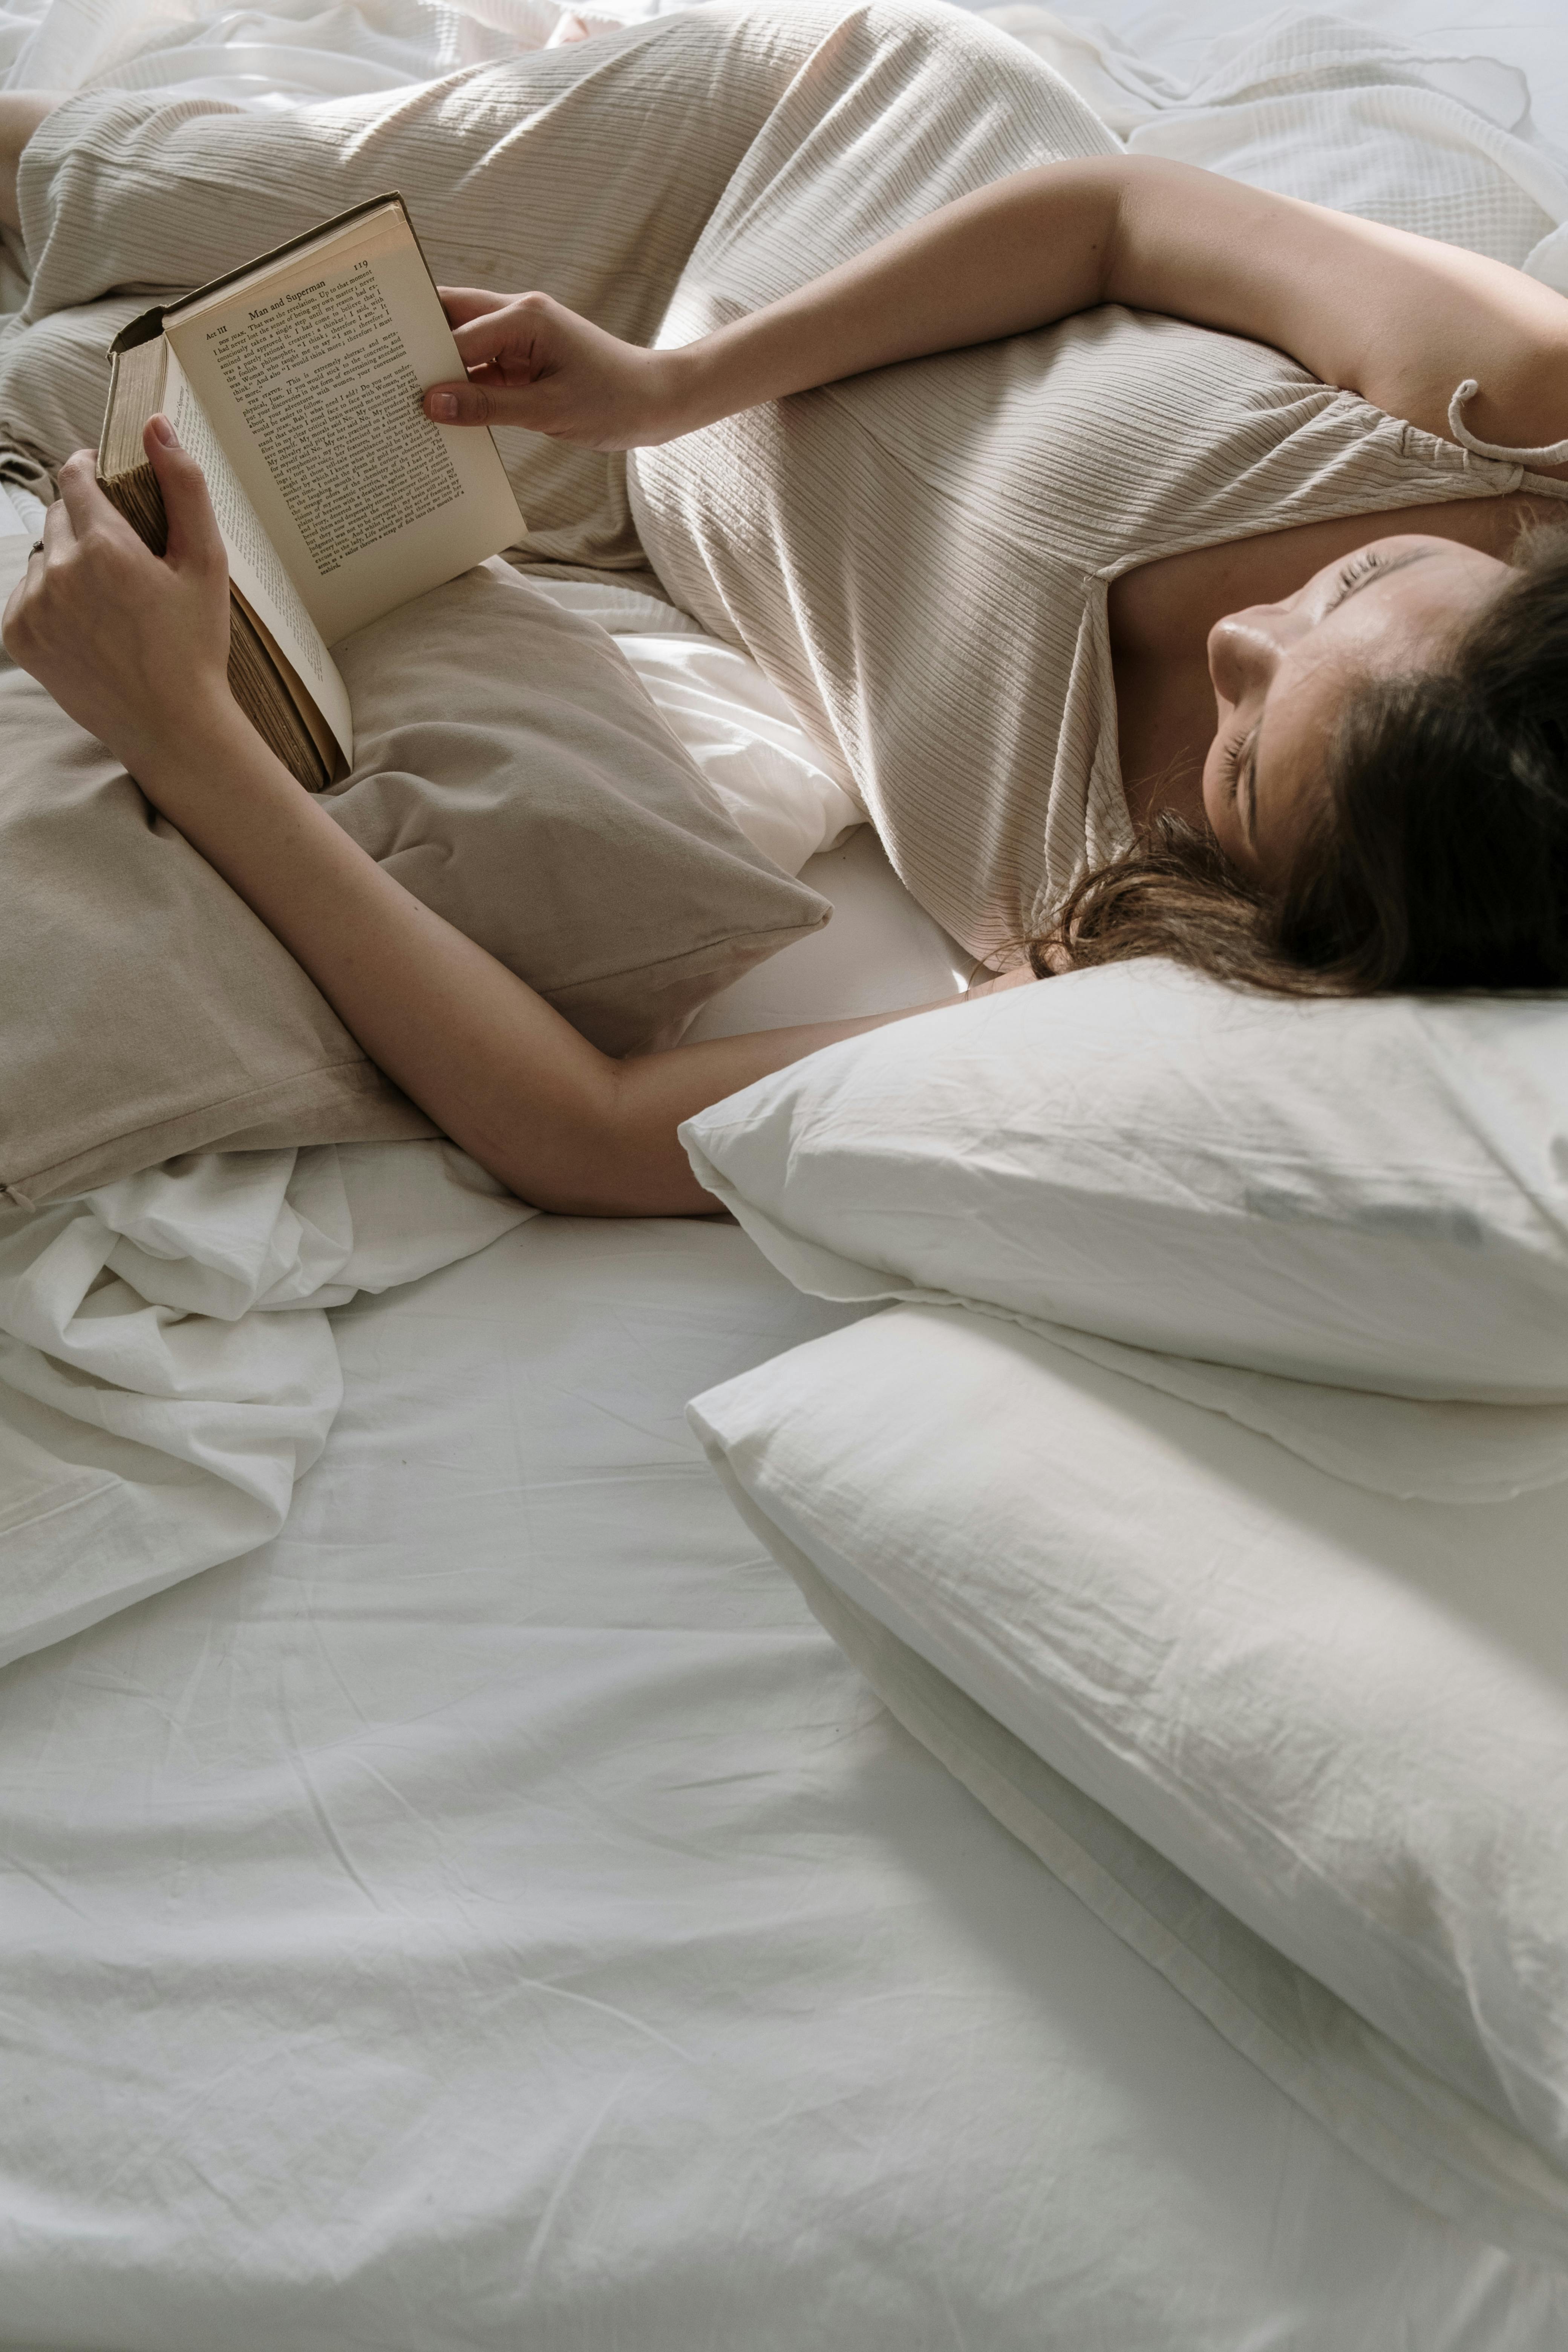 Une femme allongée dans son lit en train de lire un livre | Source : Pexels